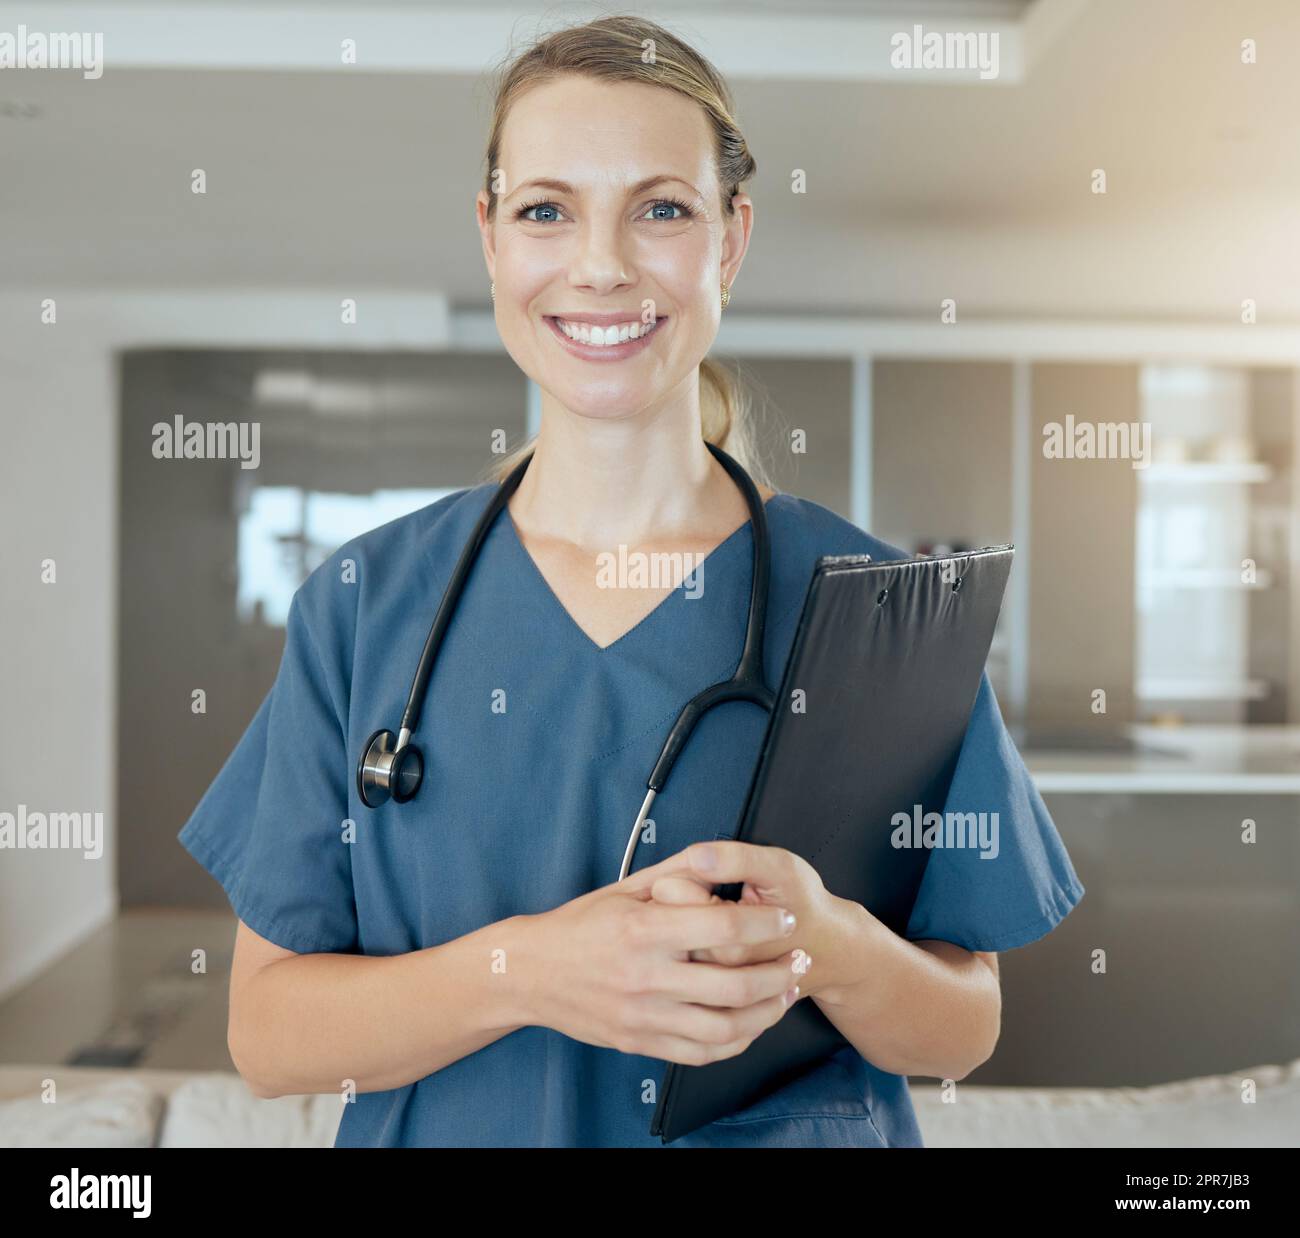 Ein hübscher junger Arzt, der glücklich und freundlich aussah, während er auf der Arbeit wartete. Lächelnder weißer Gesundheitsfachmann, der ein Stethoskop trägt und eine Mappe in der Hand hält Stockfoto